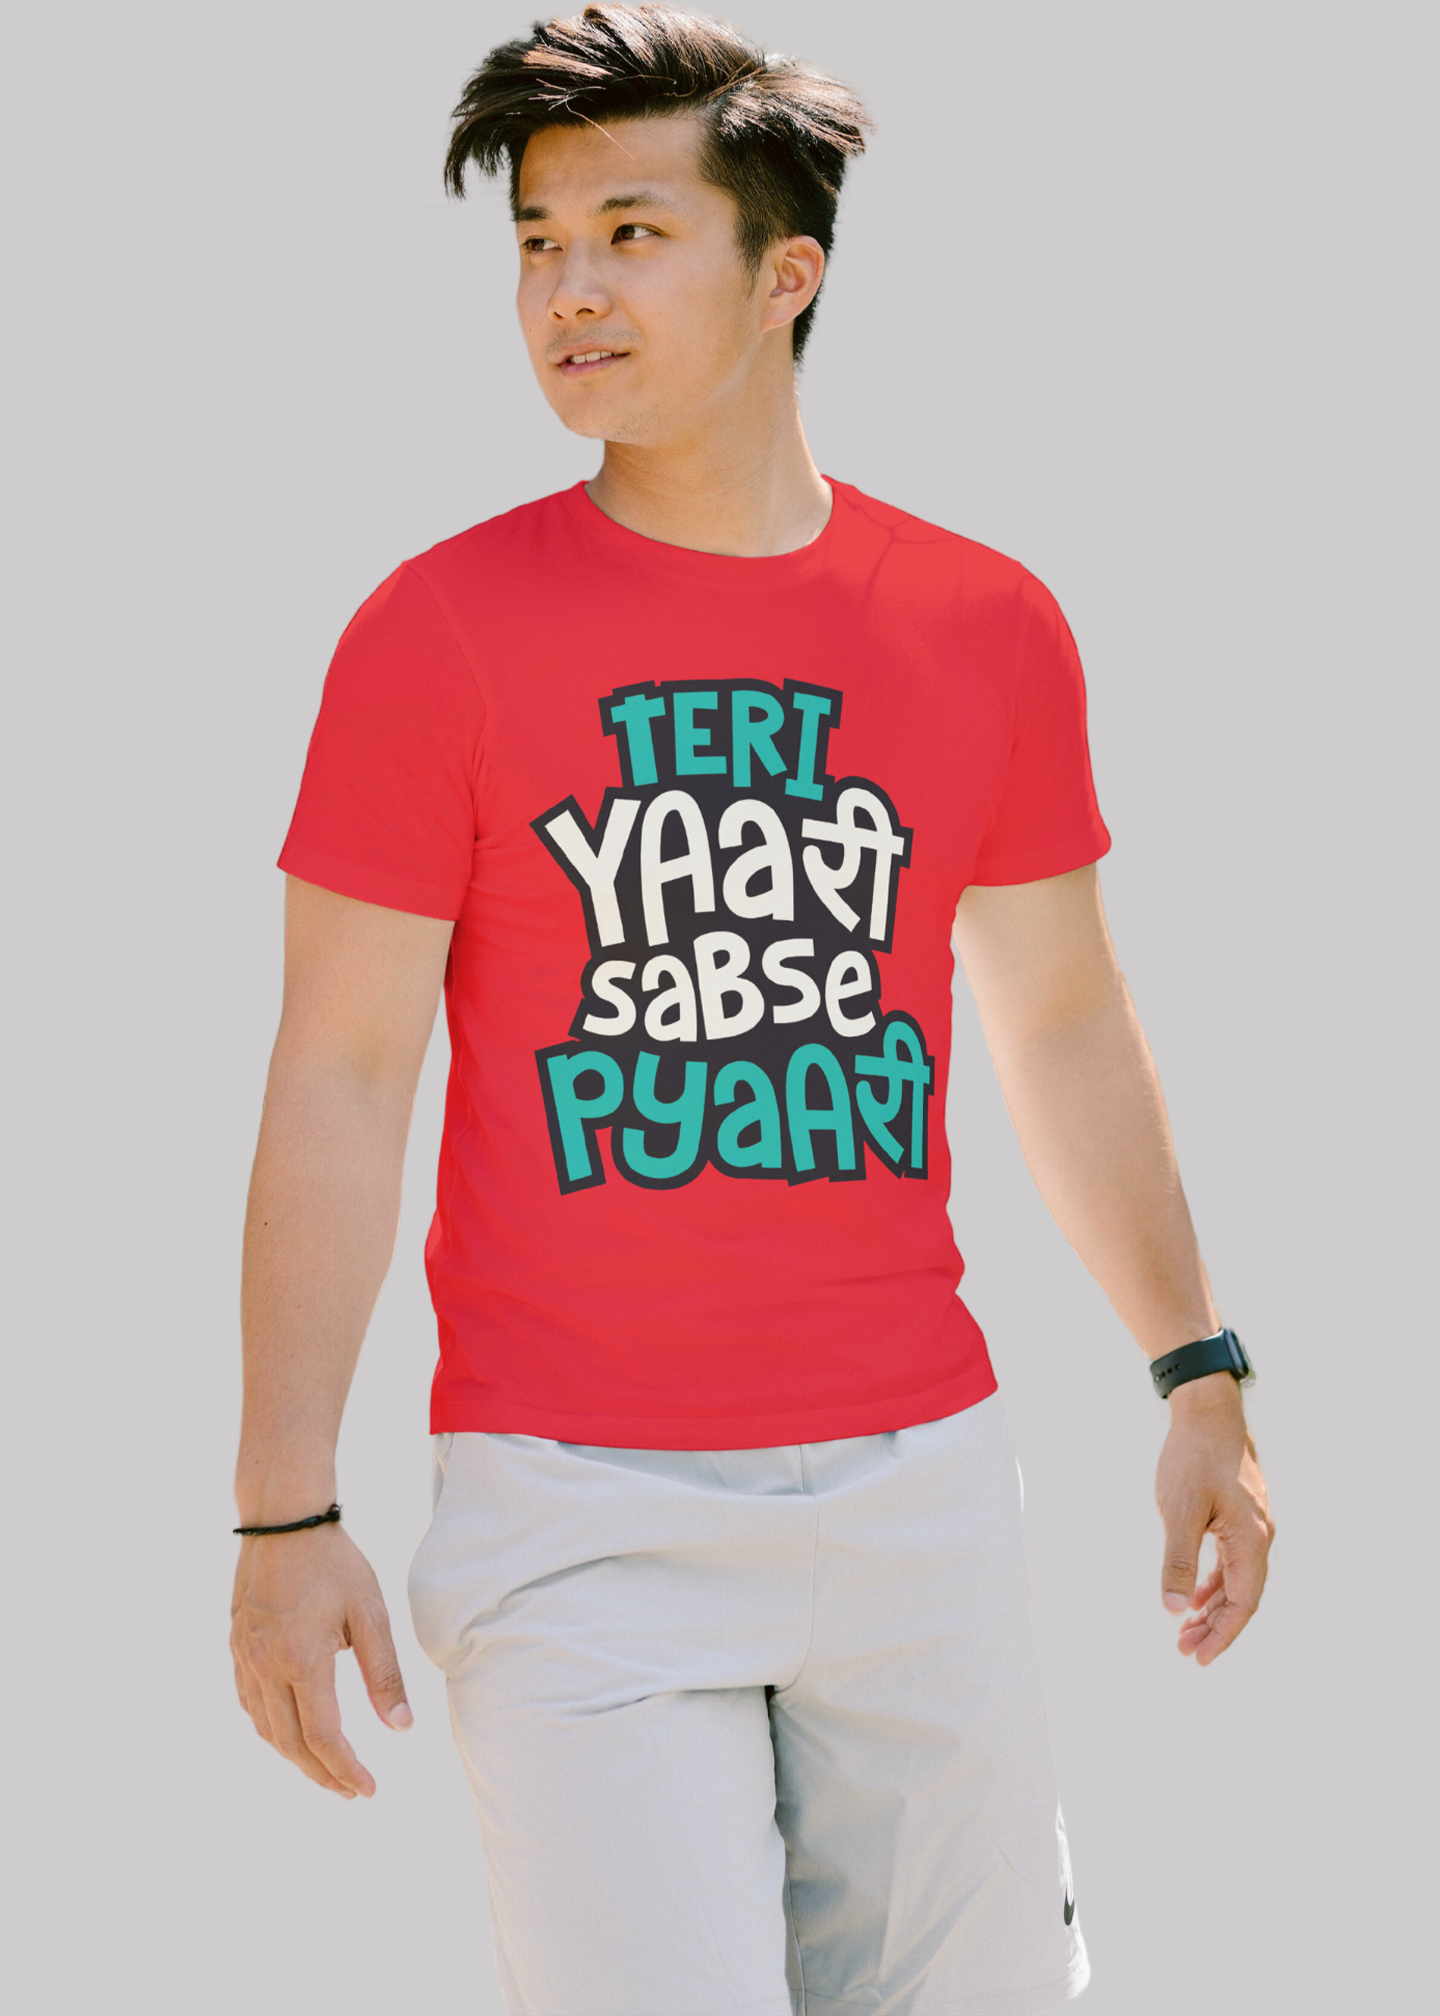 Teri yarri sabse pyari Printed Half Sleeve Premium Cotton T-shirt For Men